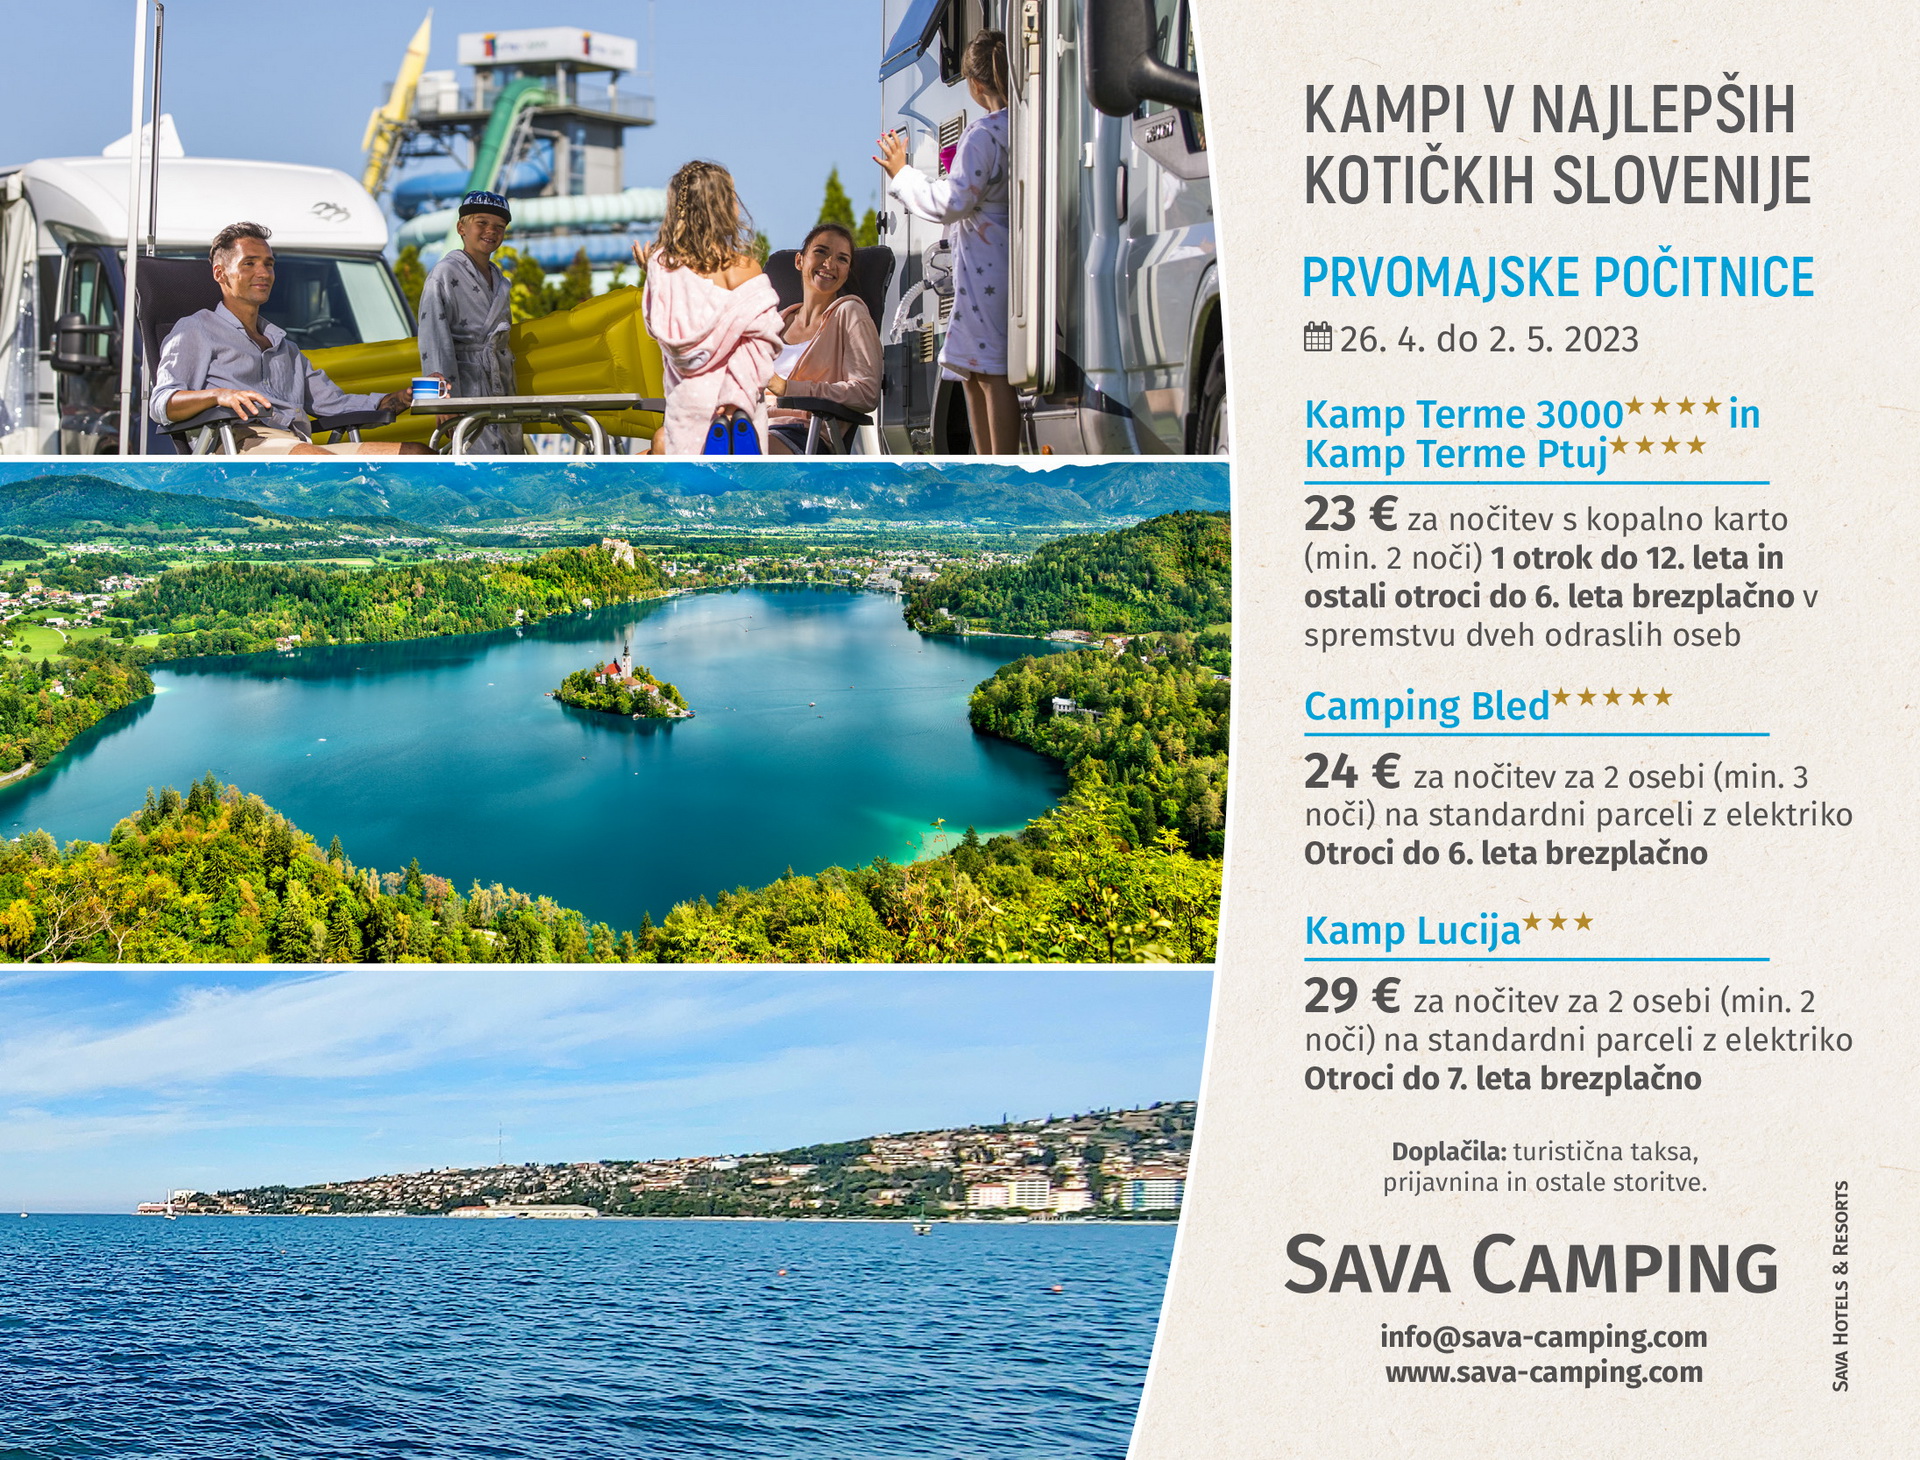 Prvomajske počitnice - kampiranje Slovenija - Avtokampi.si